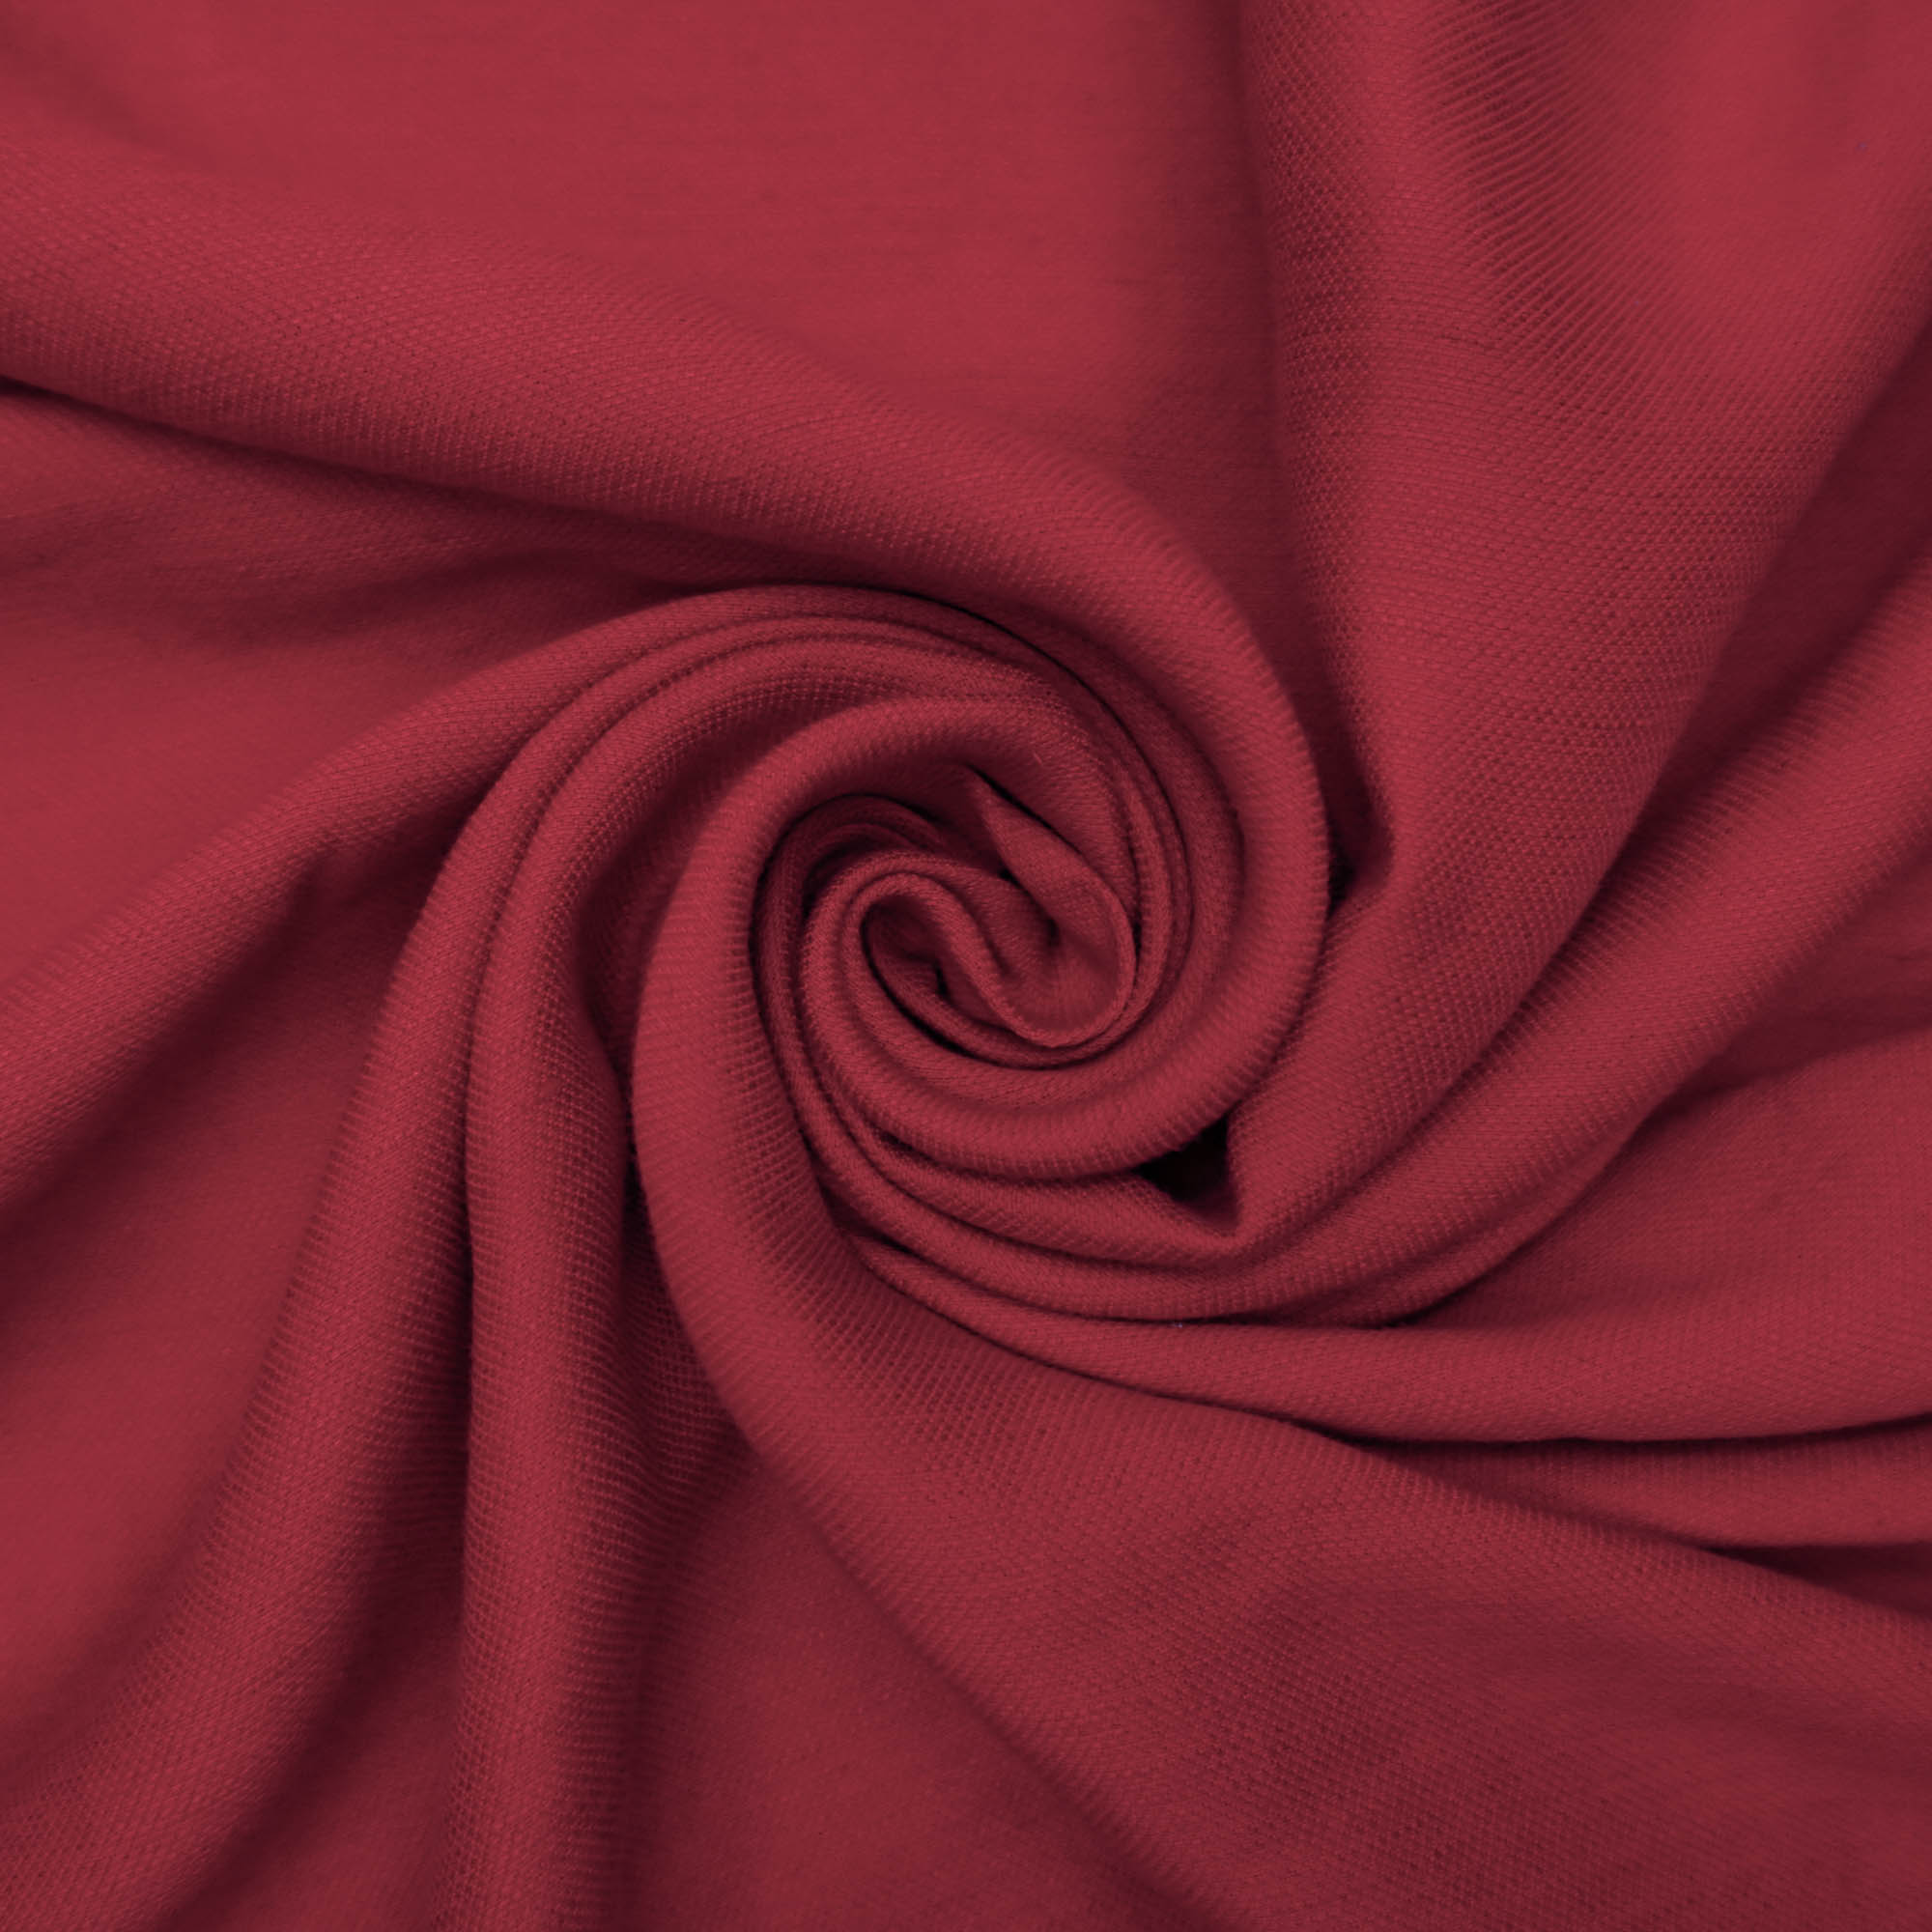 Tecido linho misto vermelho (tecido italiano legítimo)